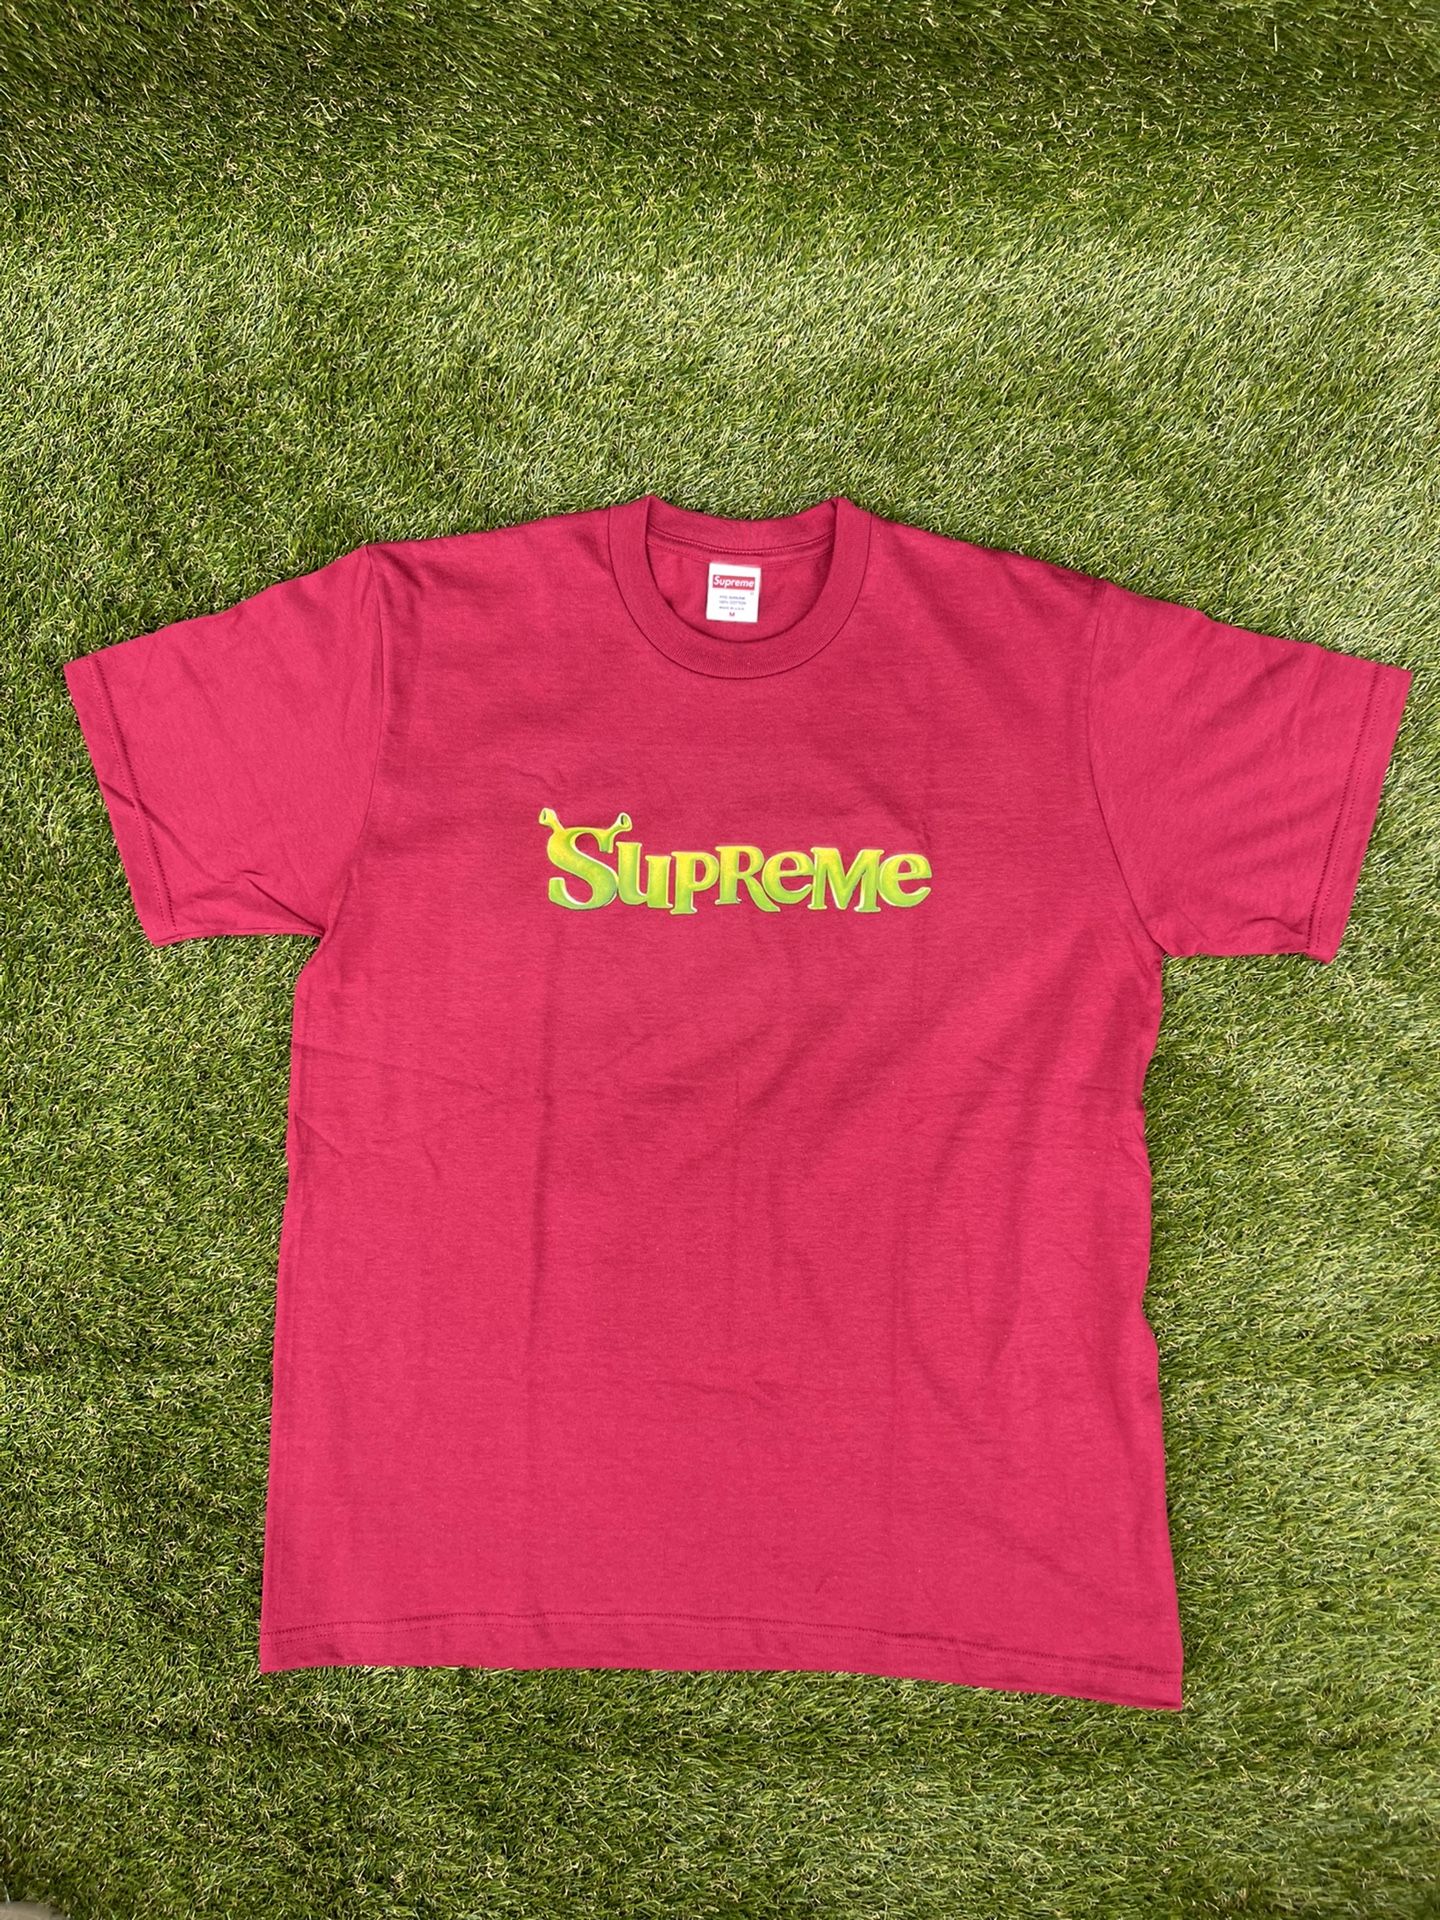 Supreme Shrek Shirt